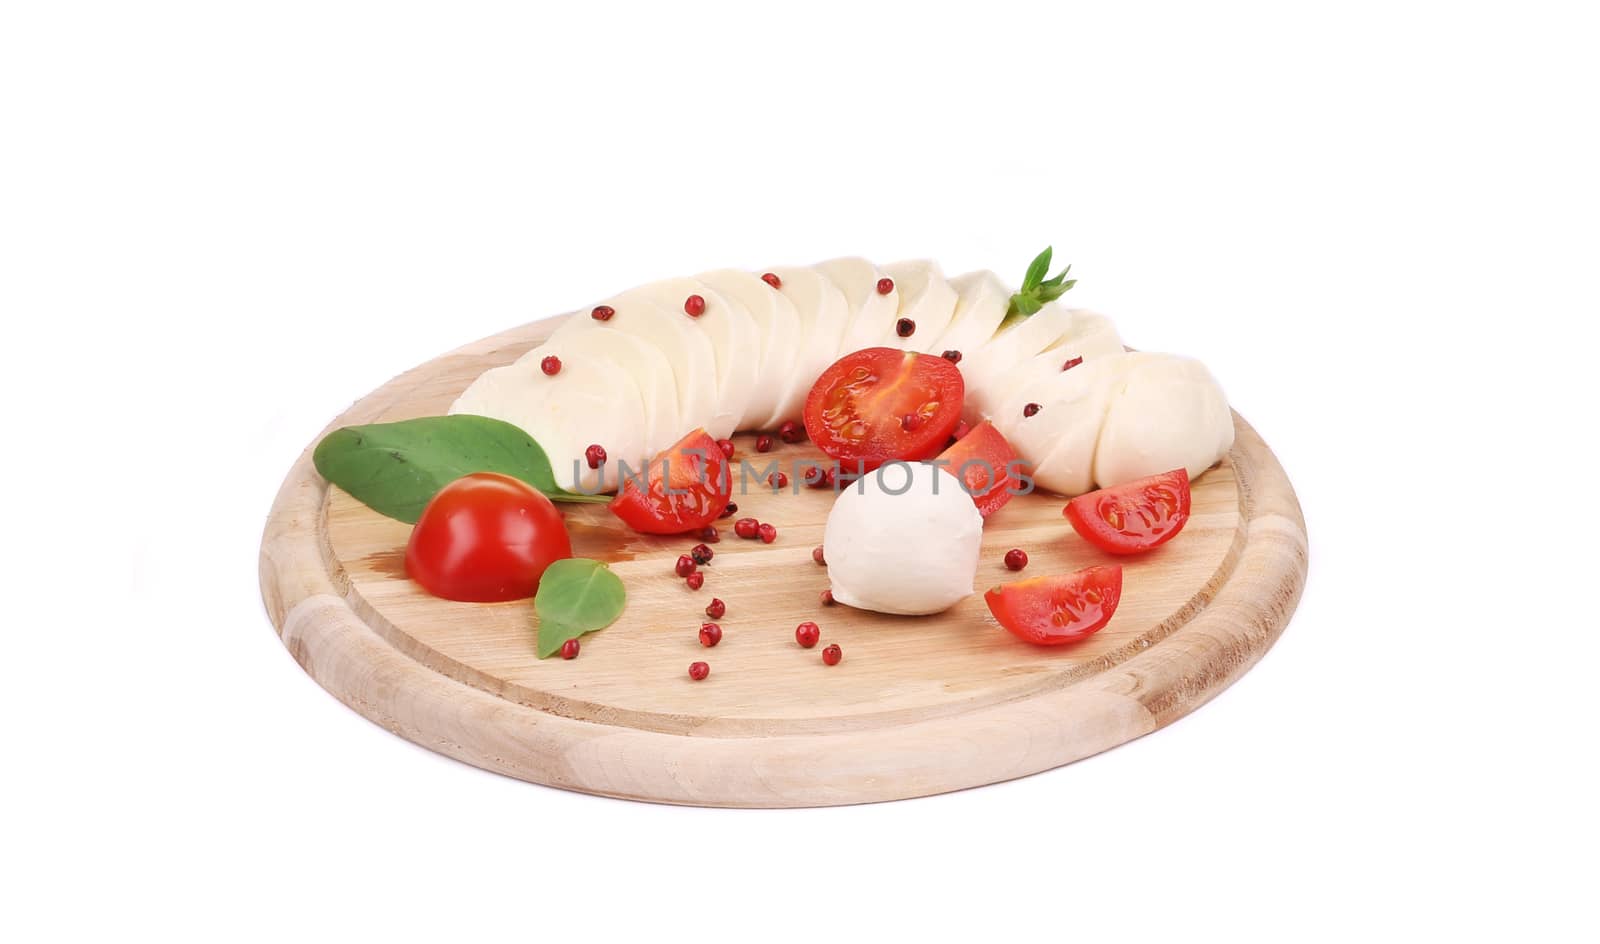 Tomatoes and mozzarella balls. by indigolotos